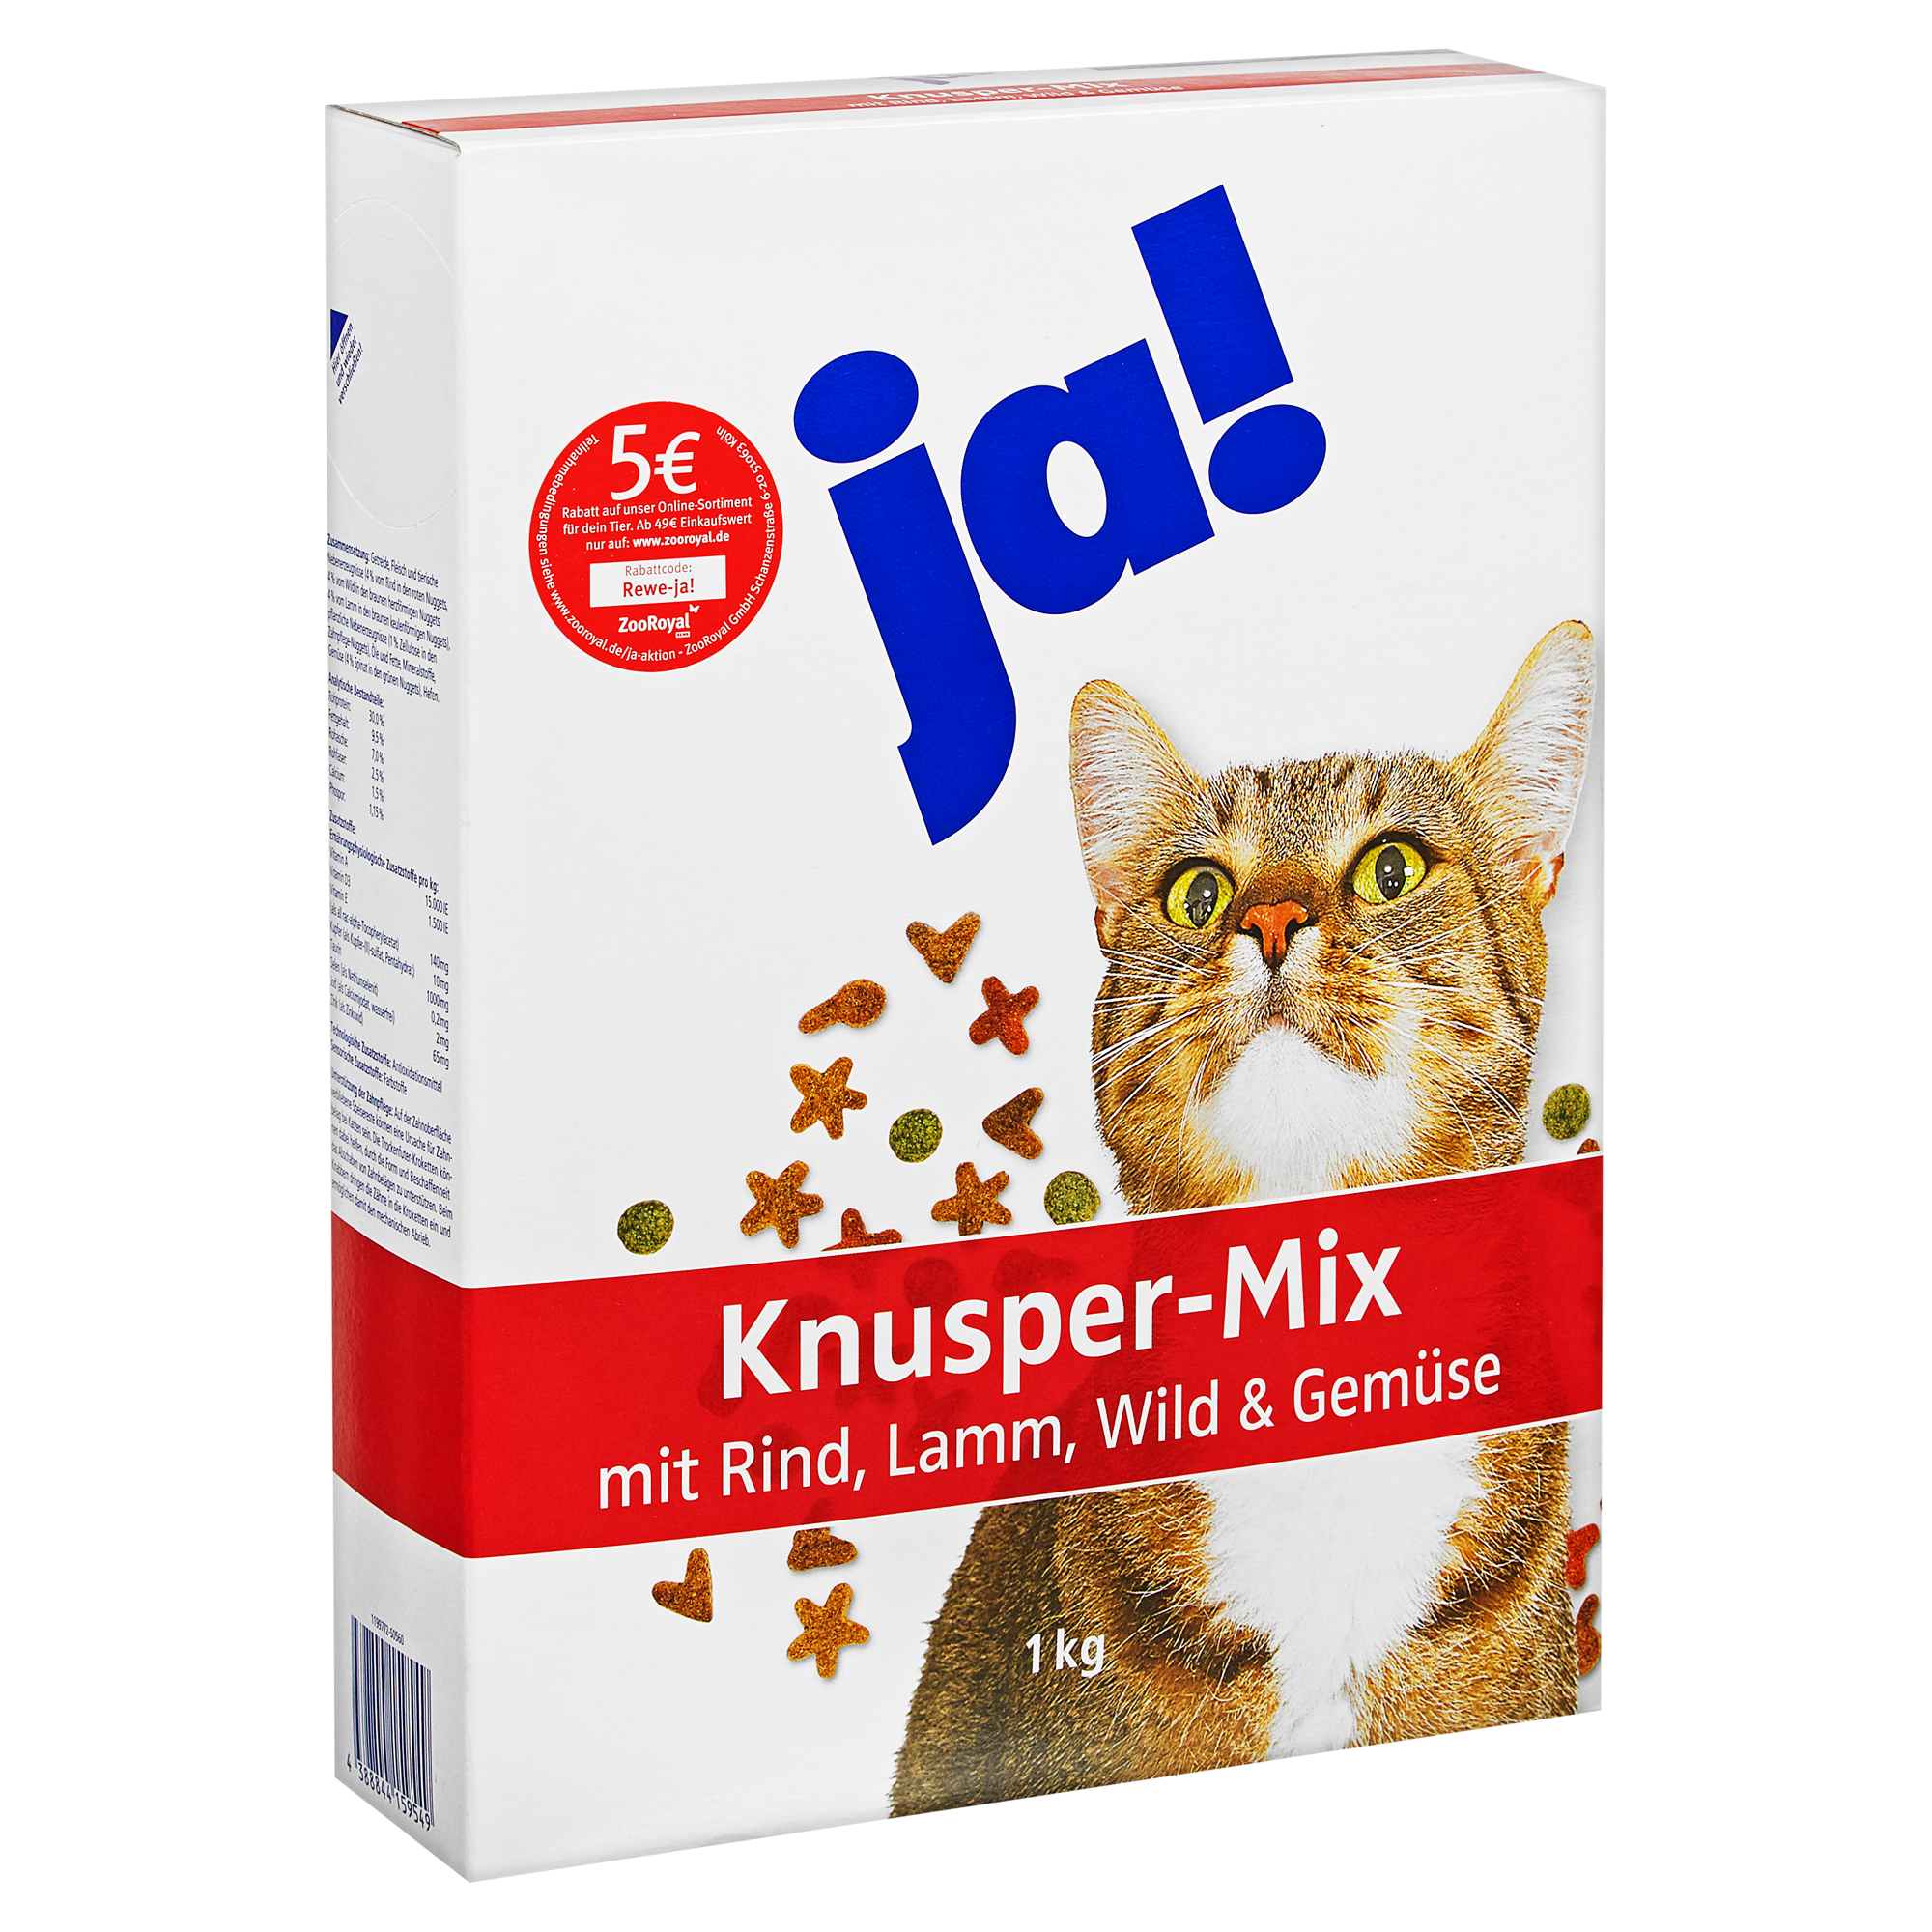 Katzentrockenfutter "Knusper-Mix" Rind und Gemüse 1 kg + product picture